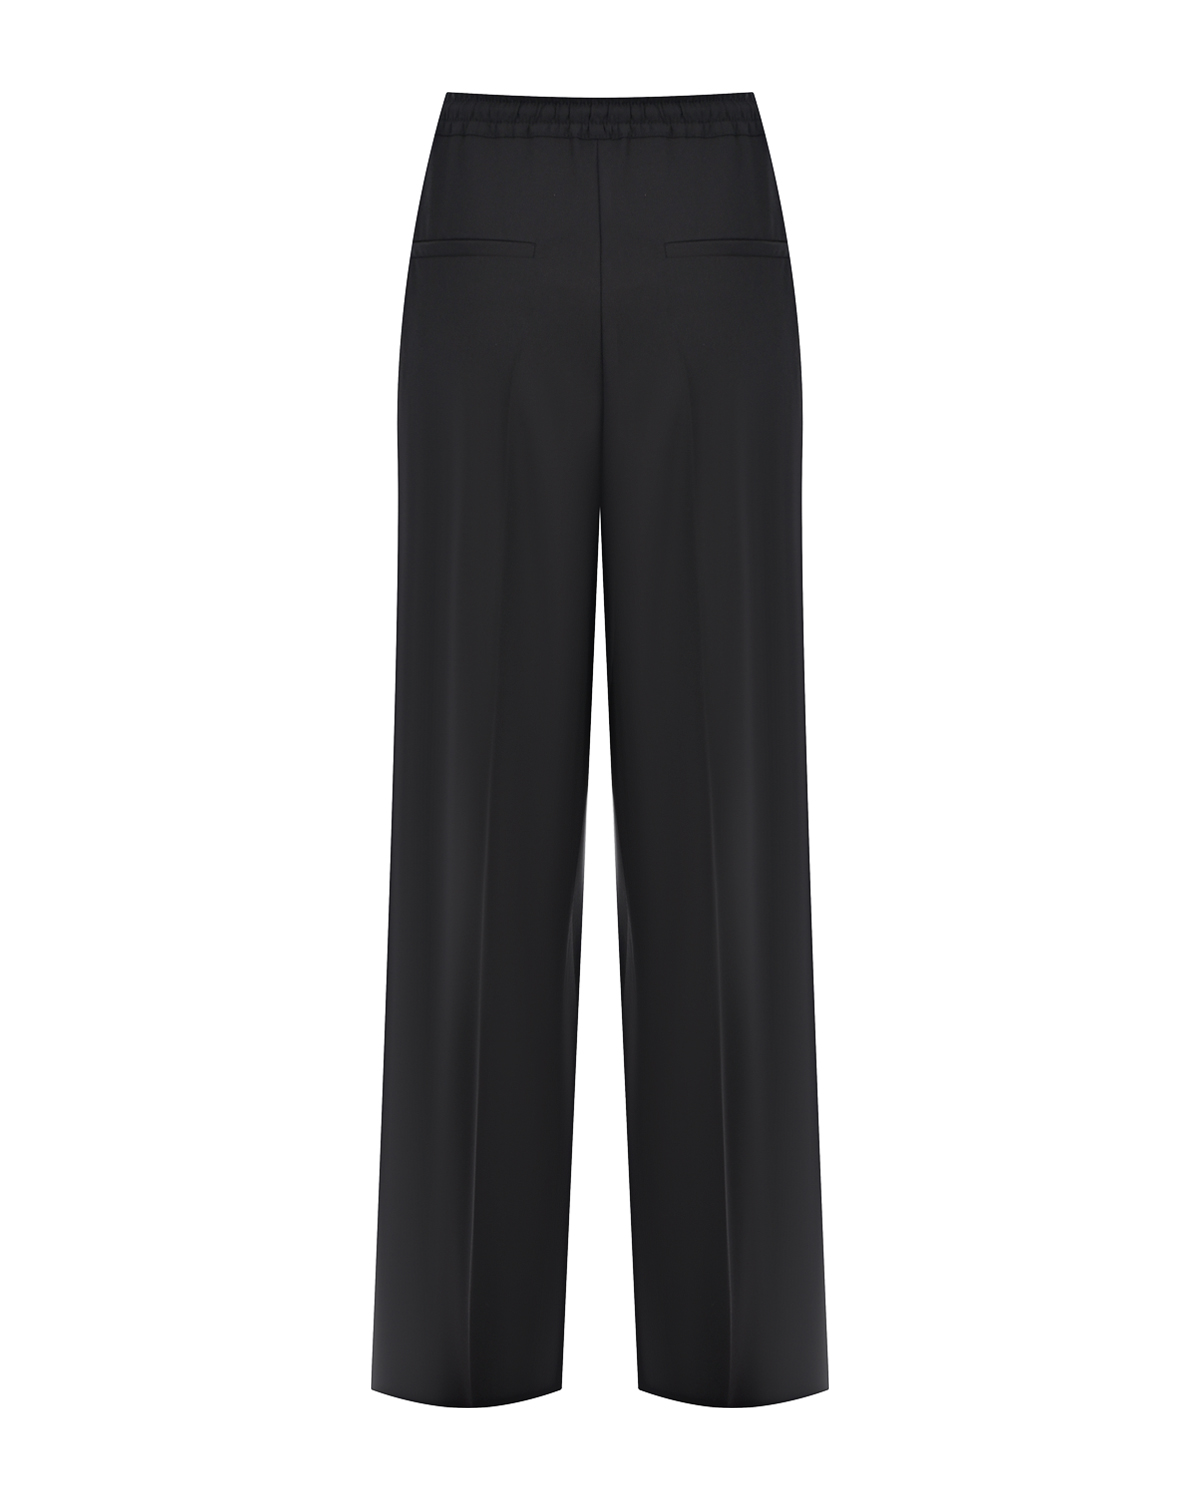 Черные брюки с поясом на кулиске ADDICTED_TO, размер 40, цвет черный - фото 2